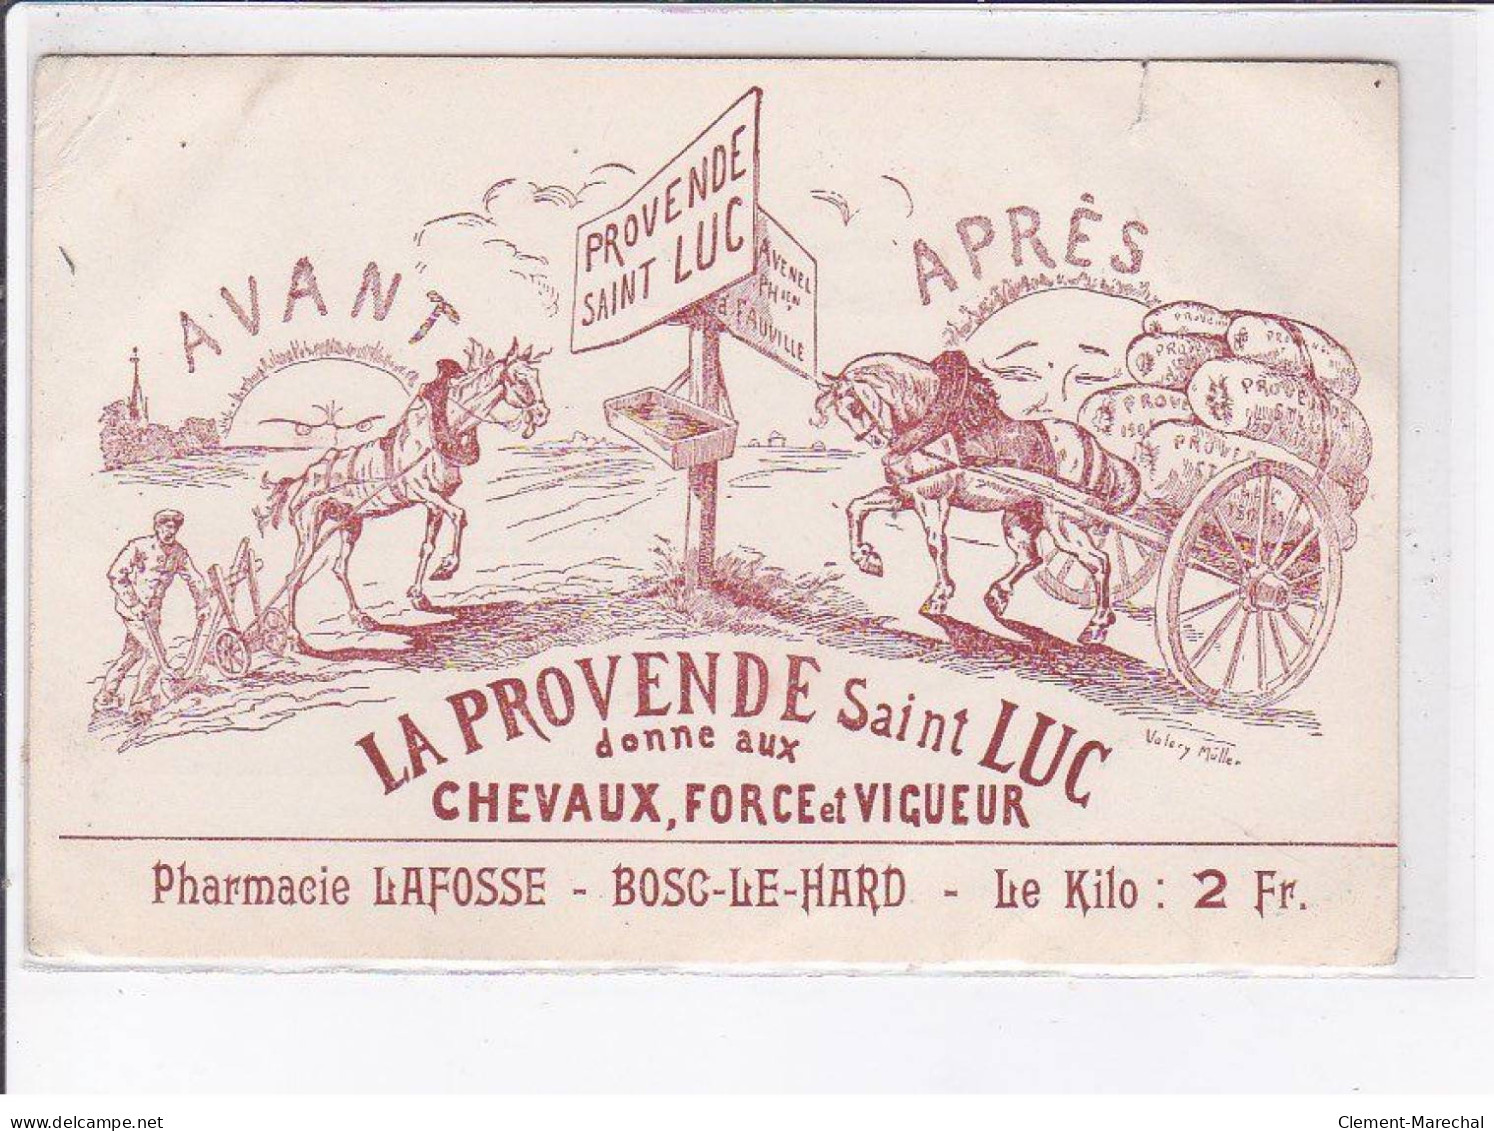 PUBLICITE: La Provende Saint-luc Donne Aux Chevaux, Force Et Vigueur, Pharmacie Lafosse, Bosc-le-hard - état - Pubblicitari